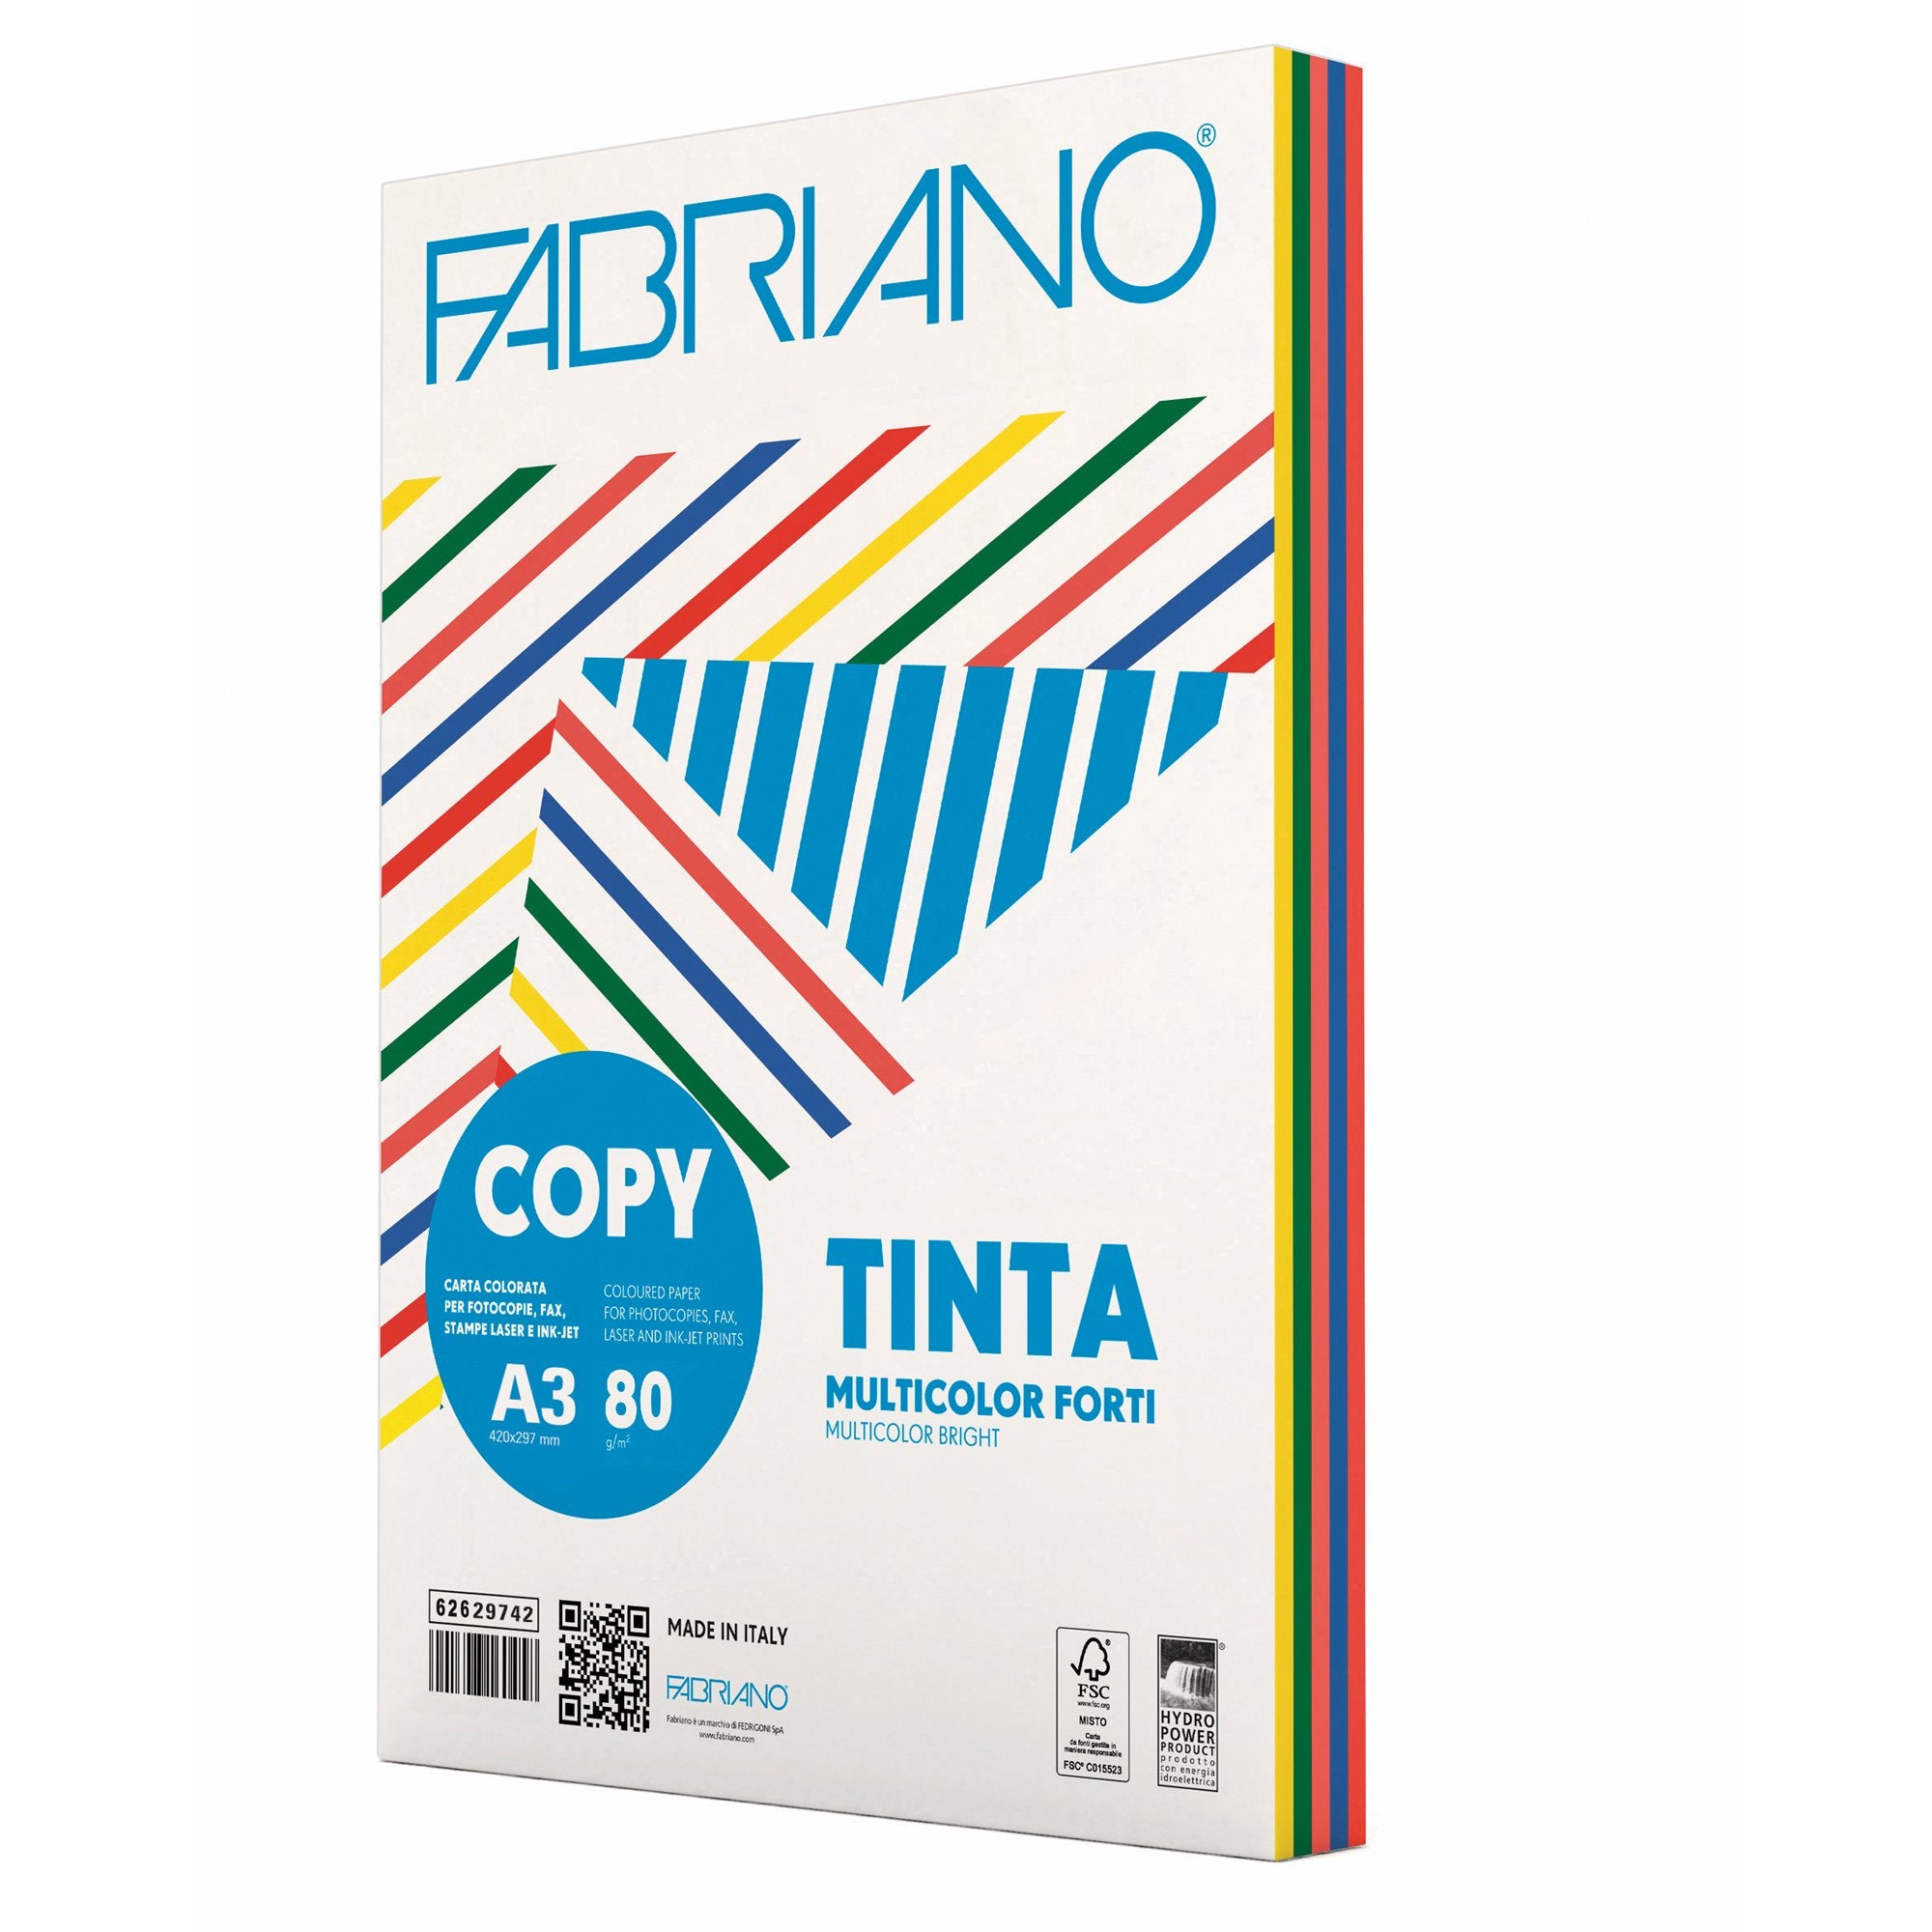 fabriano-carta-copy-tinta-multicolor-a3-80gr-250fg-mix-5-colori-forti